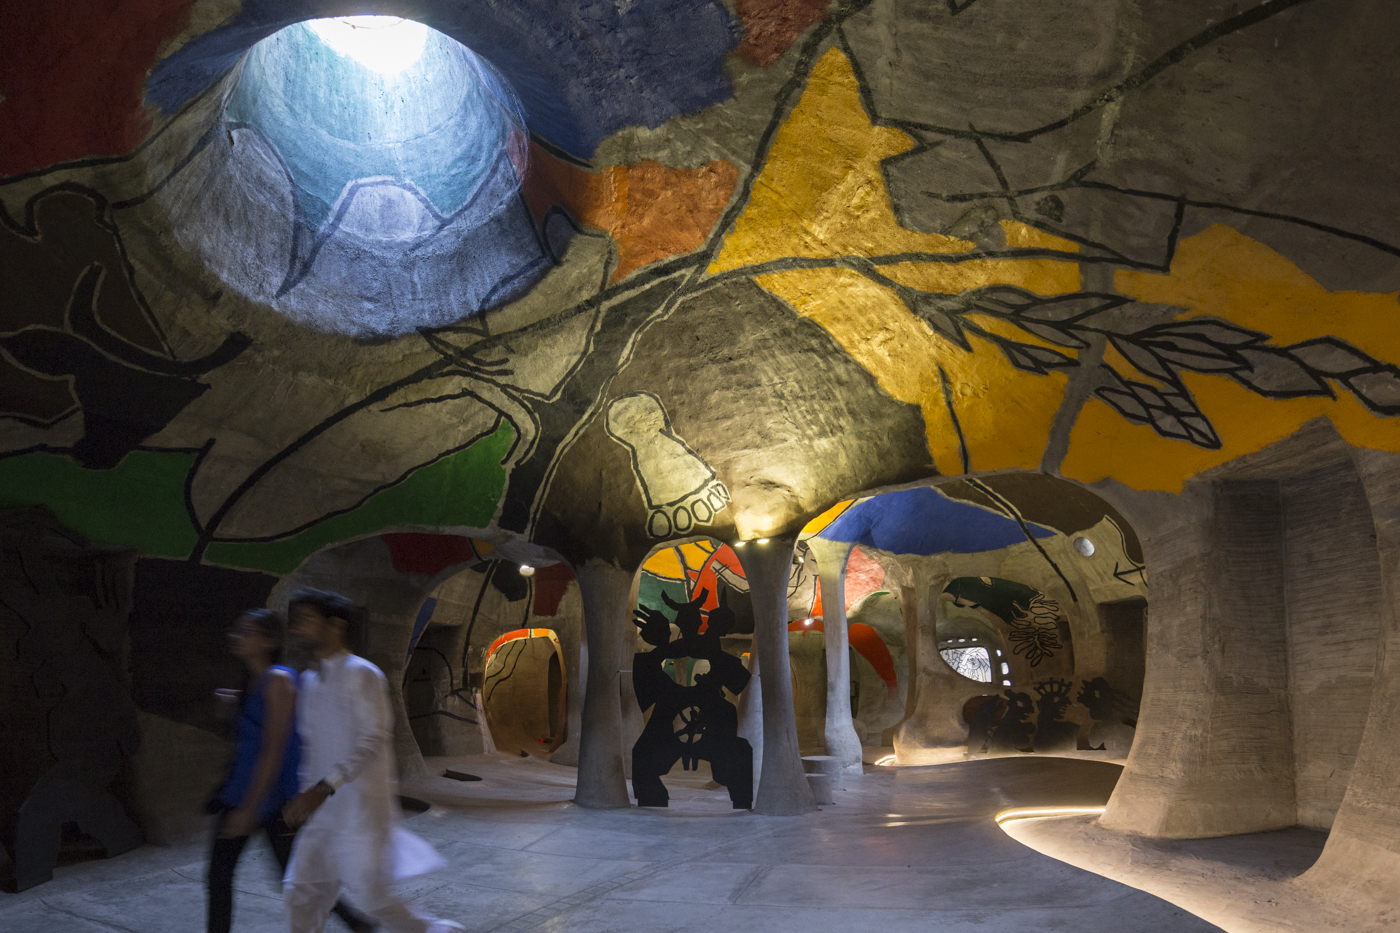 Museo subterráneo Amdavad ni Gufa, otro logro de Doshi: cuenta con bóvedas y protuberancias redondeadas cubiertas de mosaicos que surgen del suelo